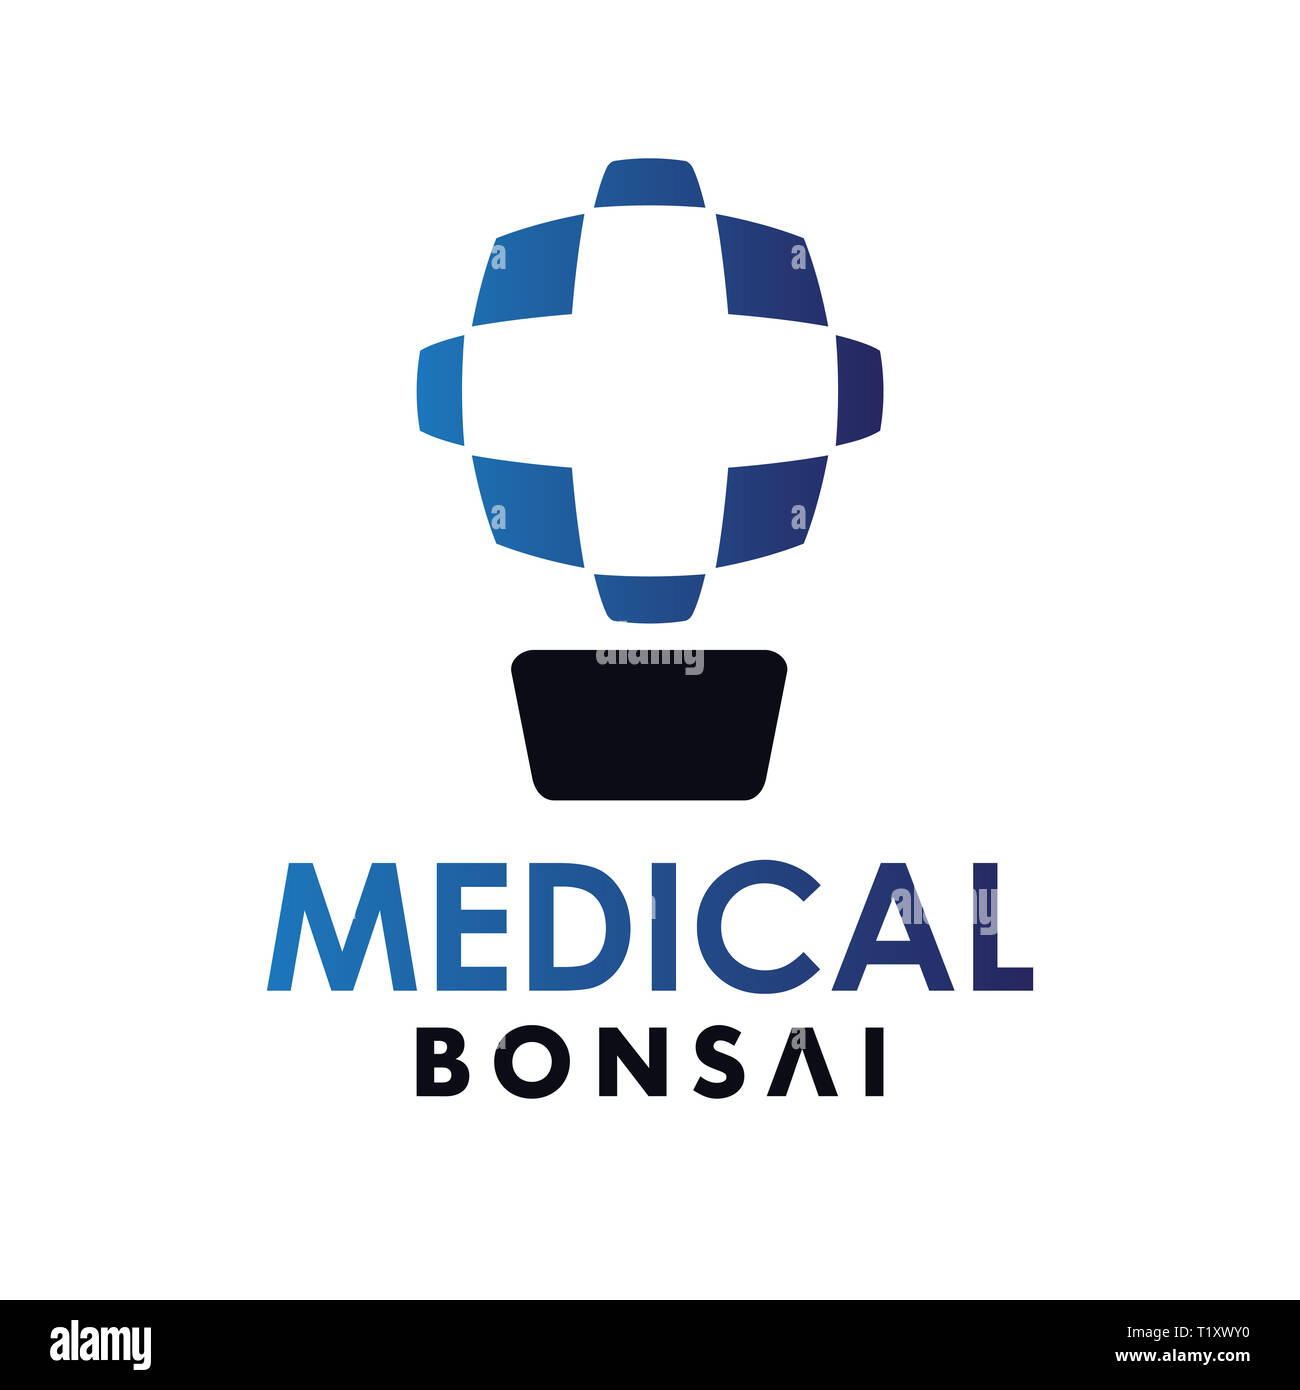 Medical bonsai logo astratto modello di progetto Foto Stock